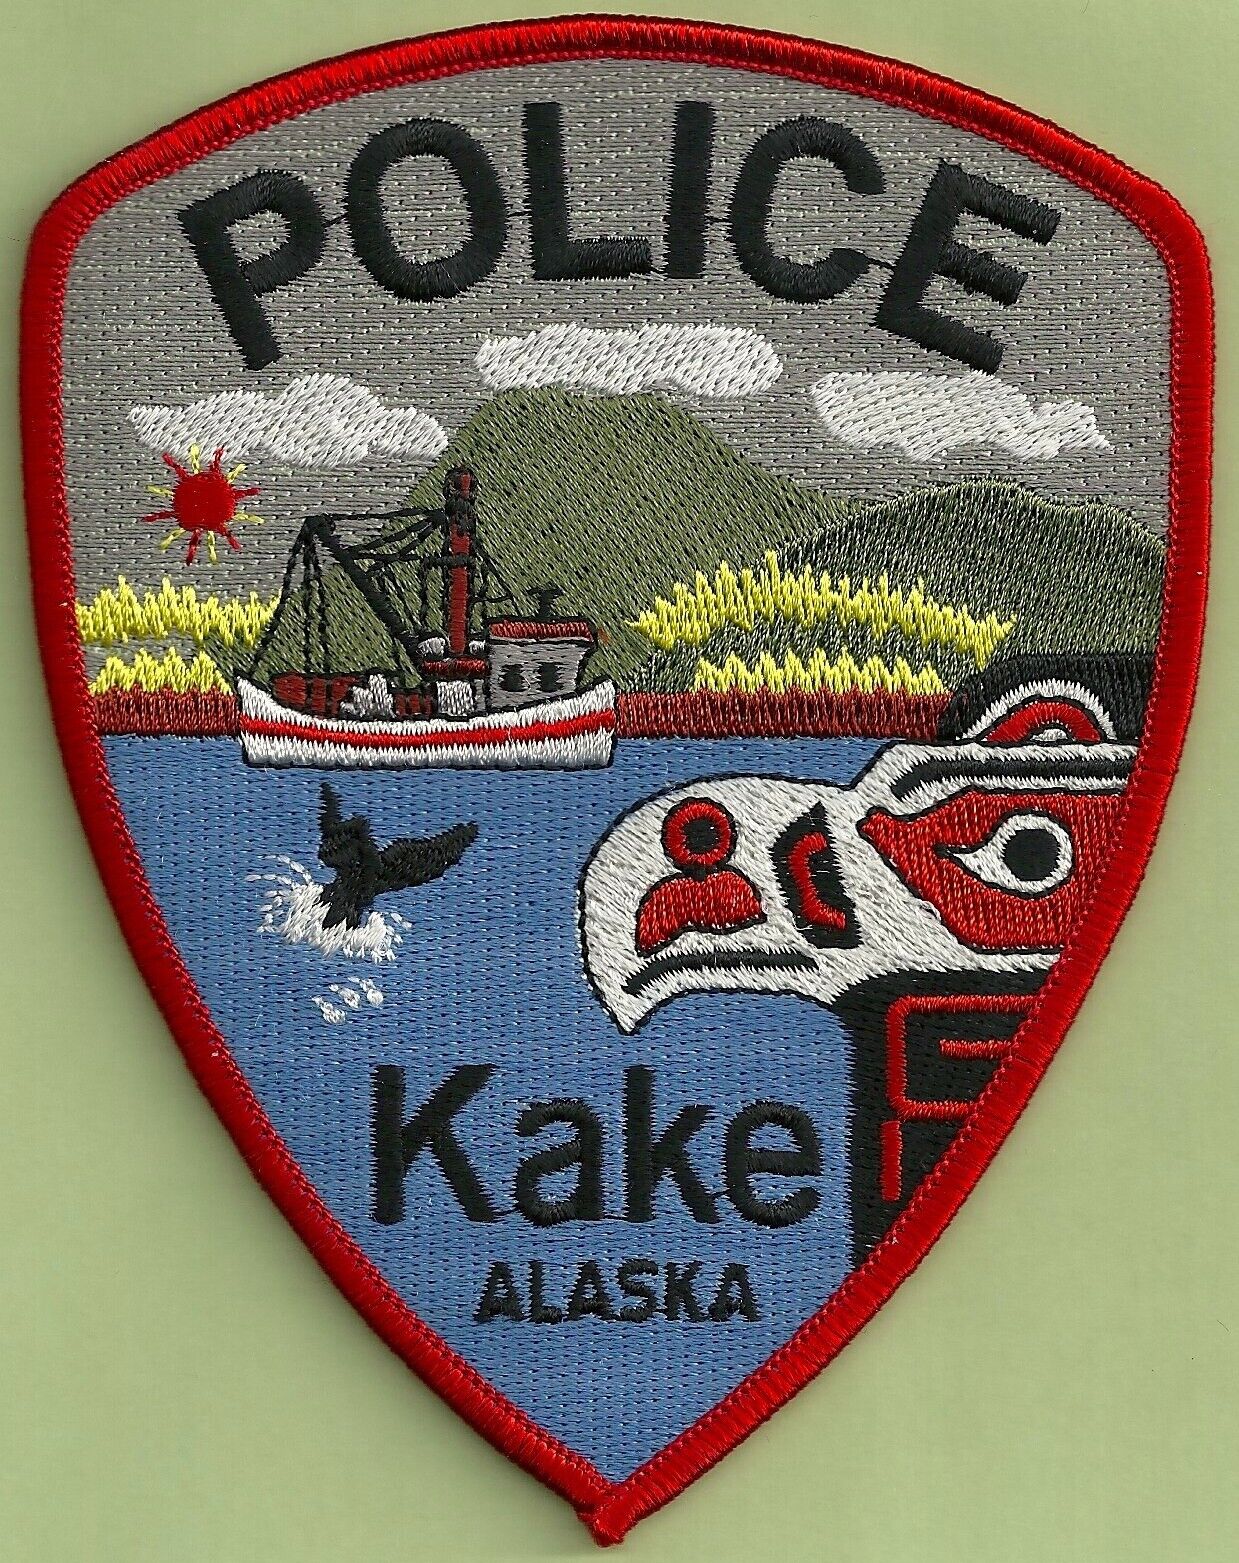 KAKE ALASKA POLICE SHOULDER PATCH